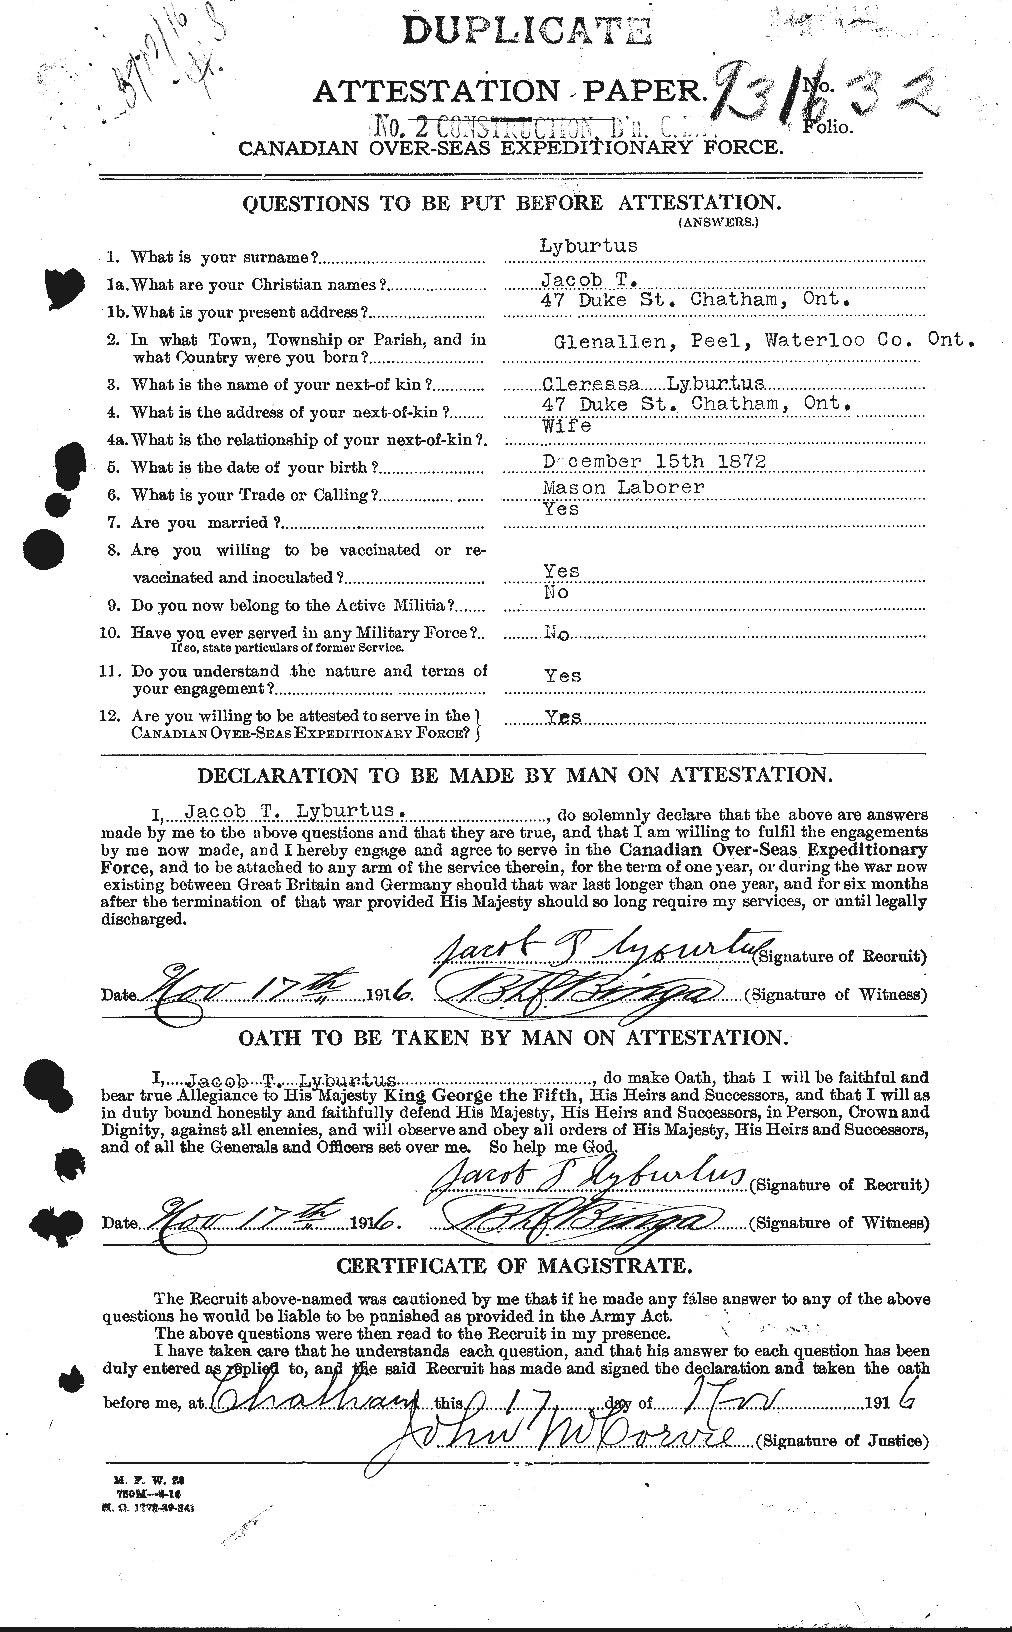 Dossiers du Personnel de la Première Guerre mondiale - CEC 471695a